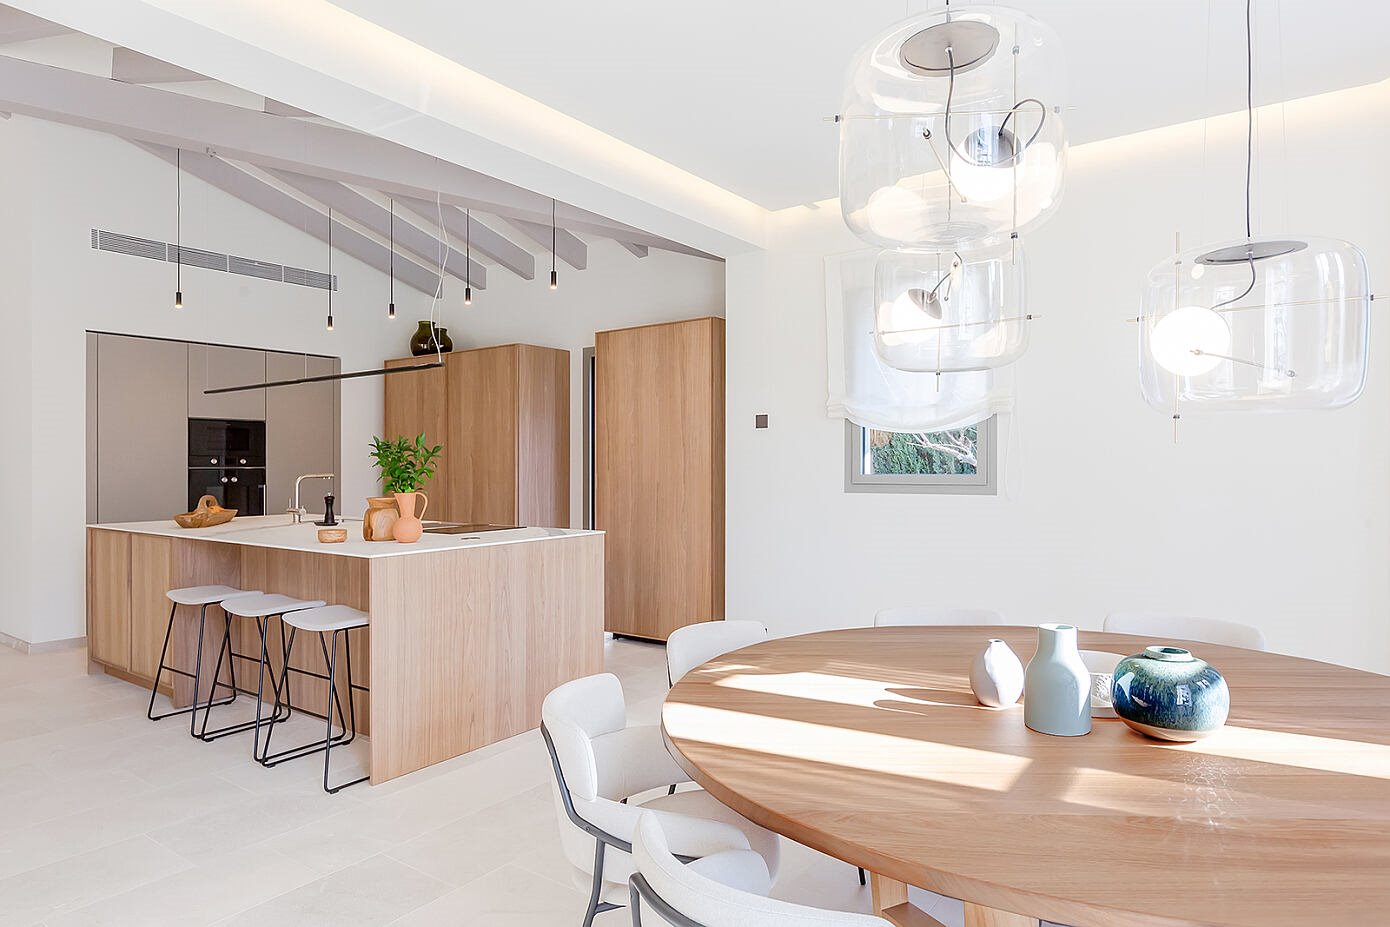 Casa moderna de campo en Mallorca con decoracion mediterranea cocina comedor